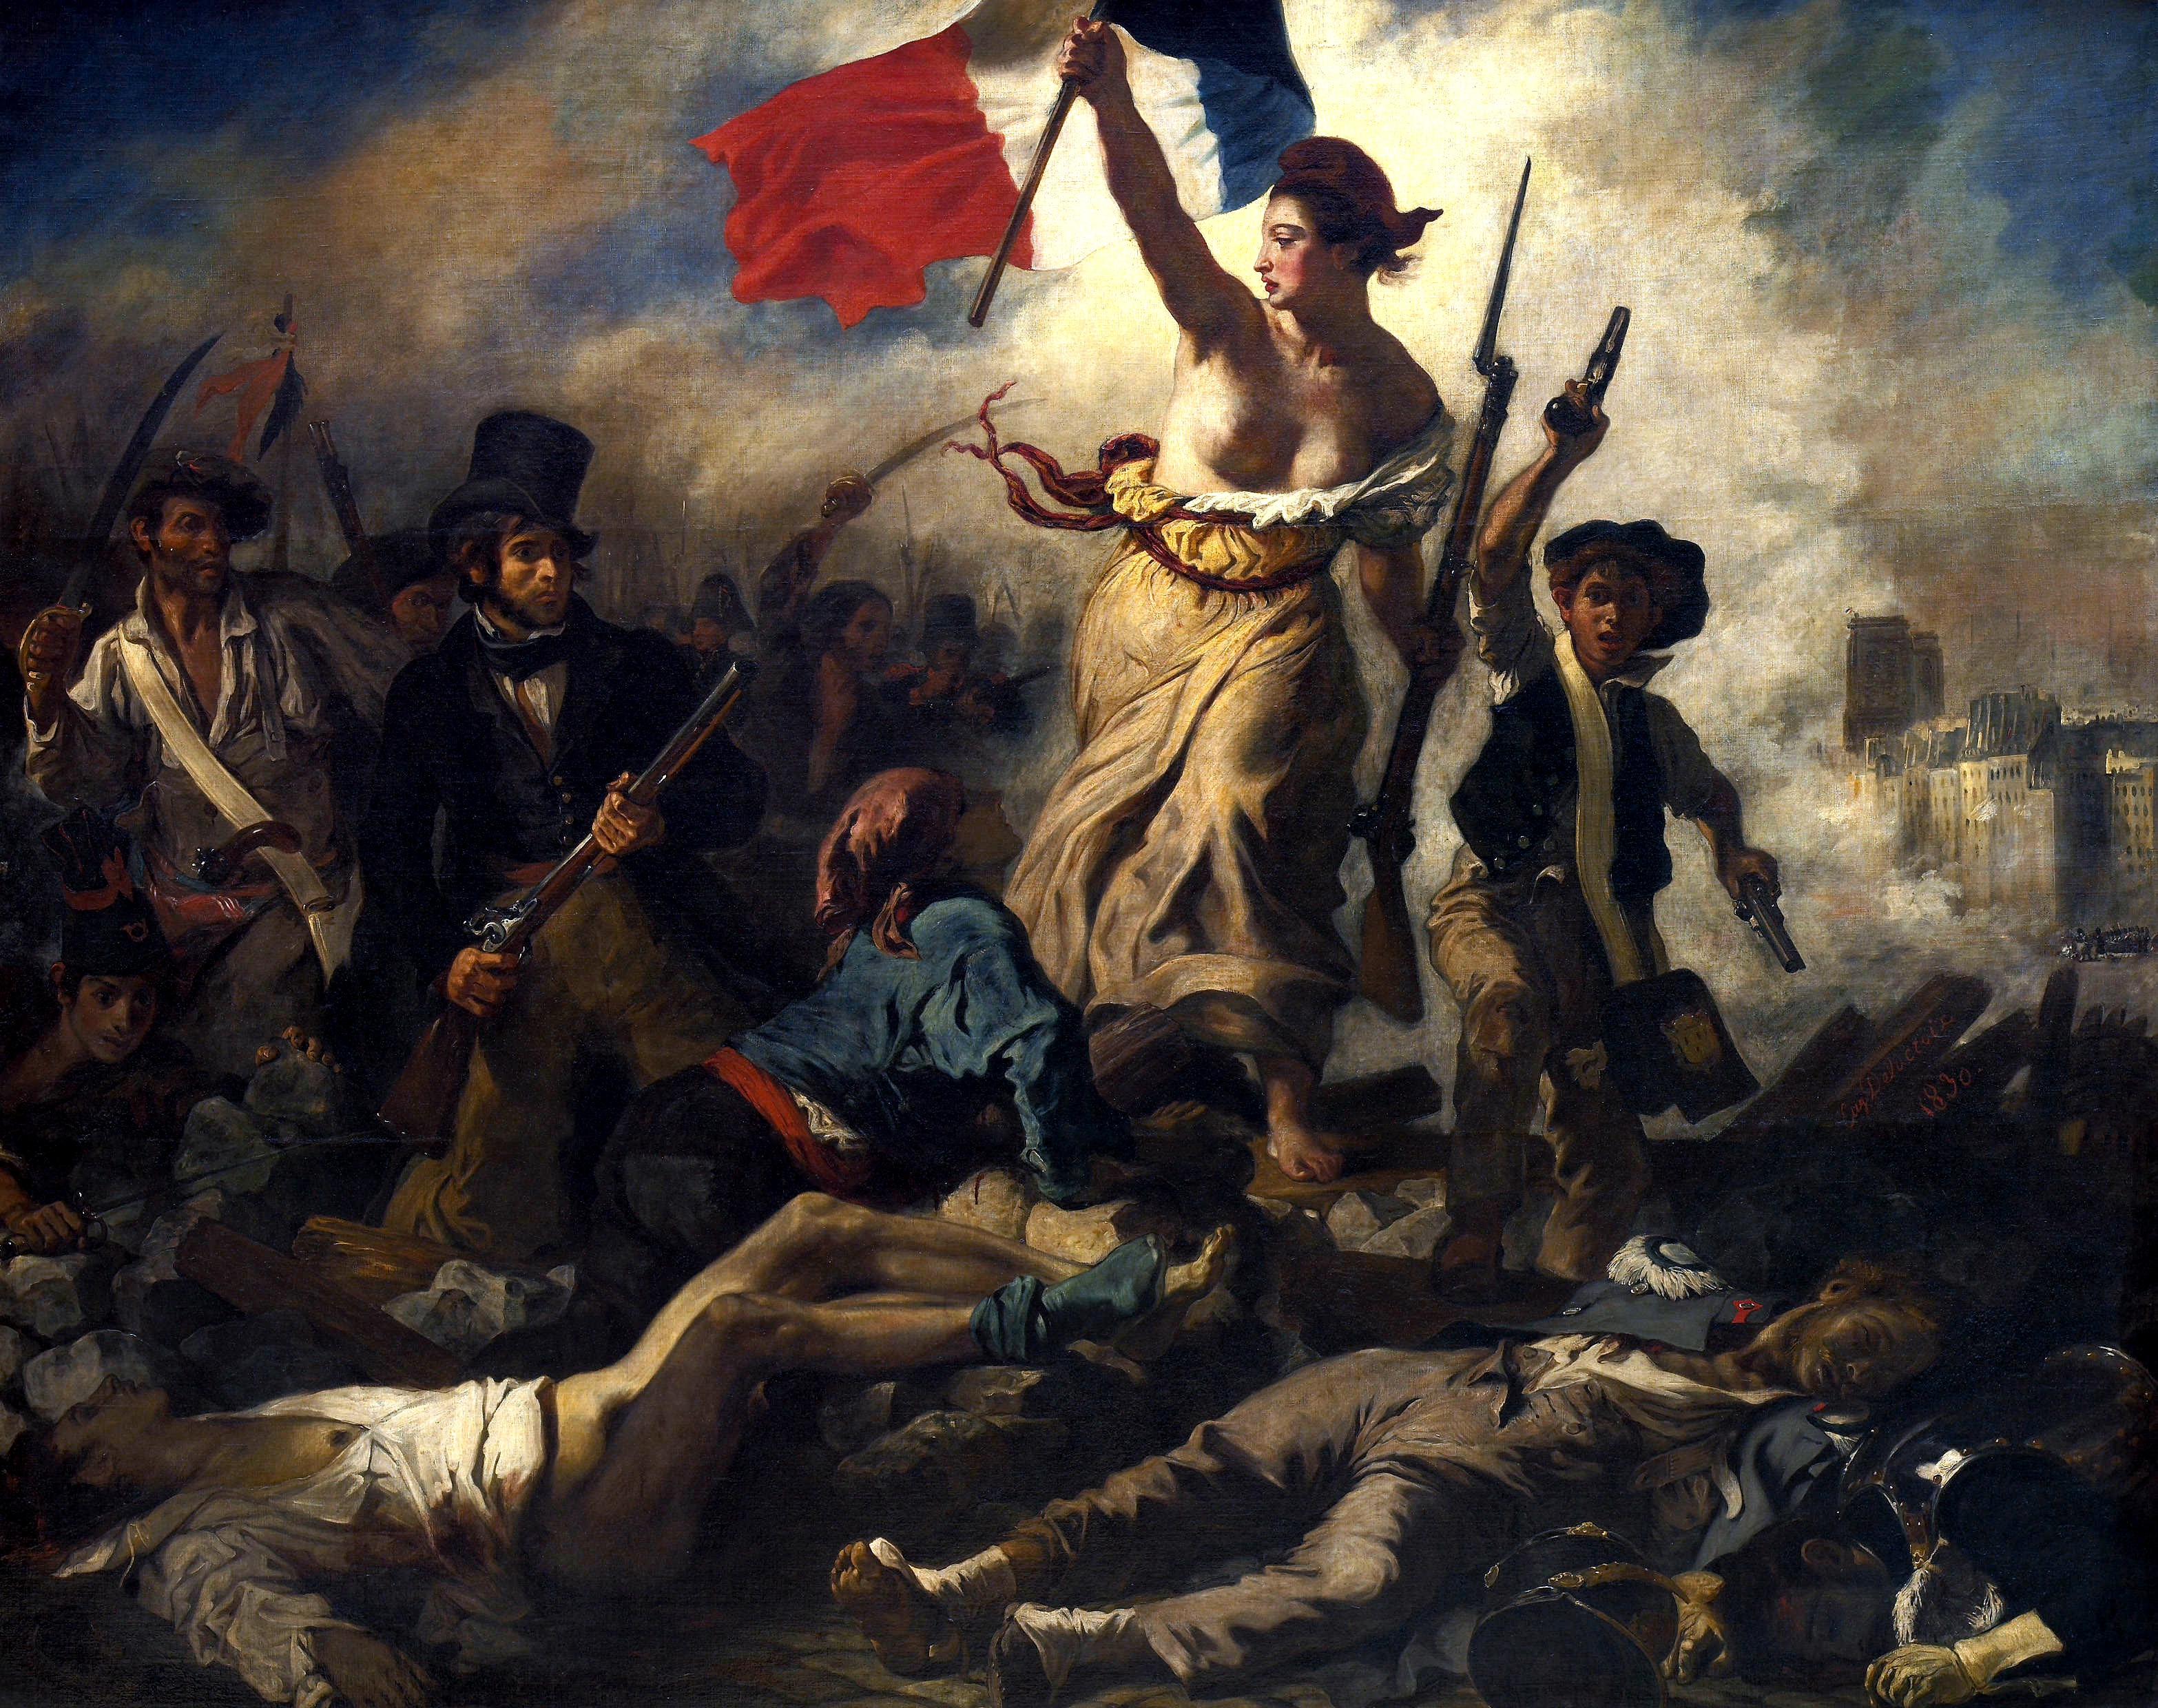 Liberty Leading the People by Eugène Delacroix - 1830 - 260 x 325 cm Musée du Louvre